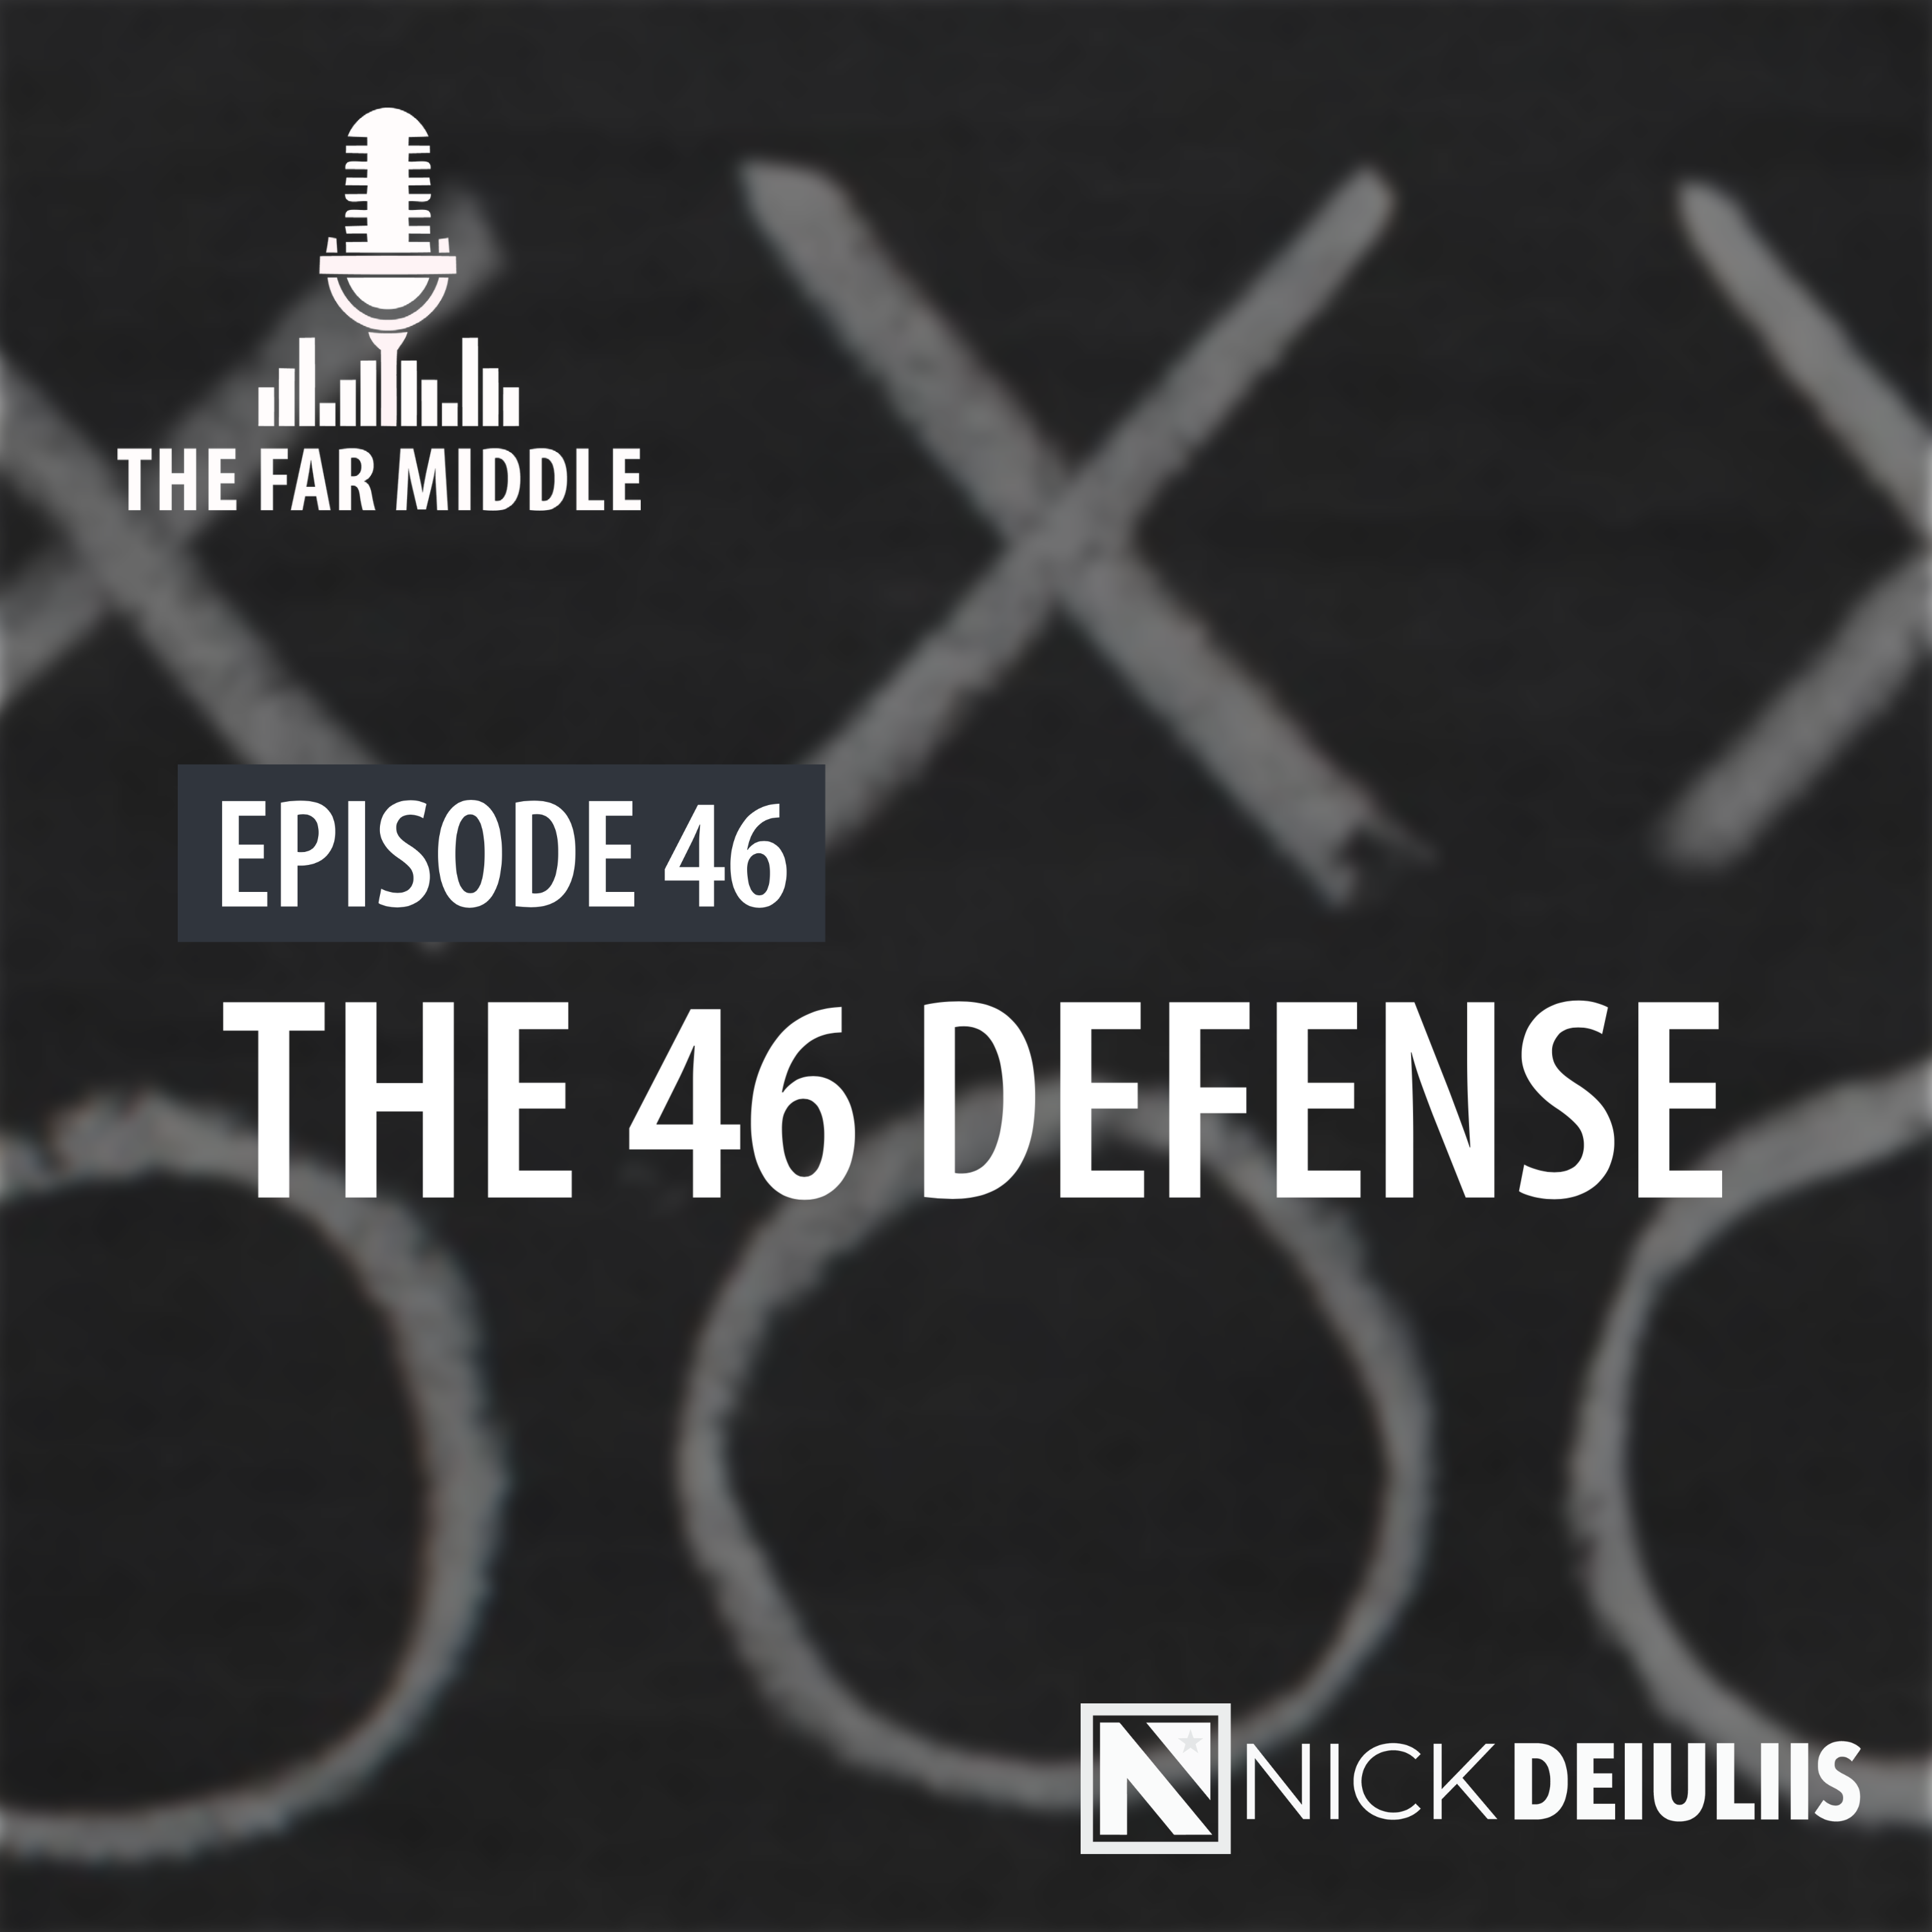 The 46 Defense